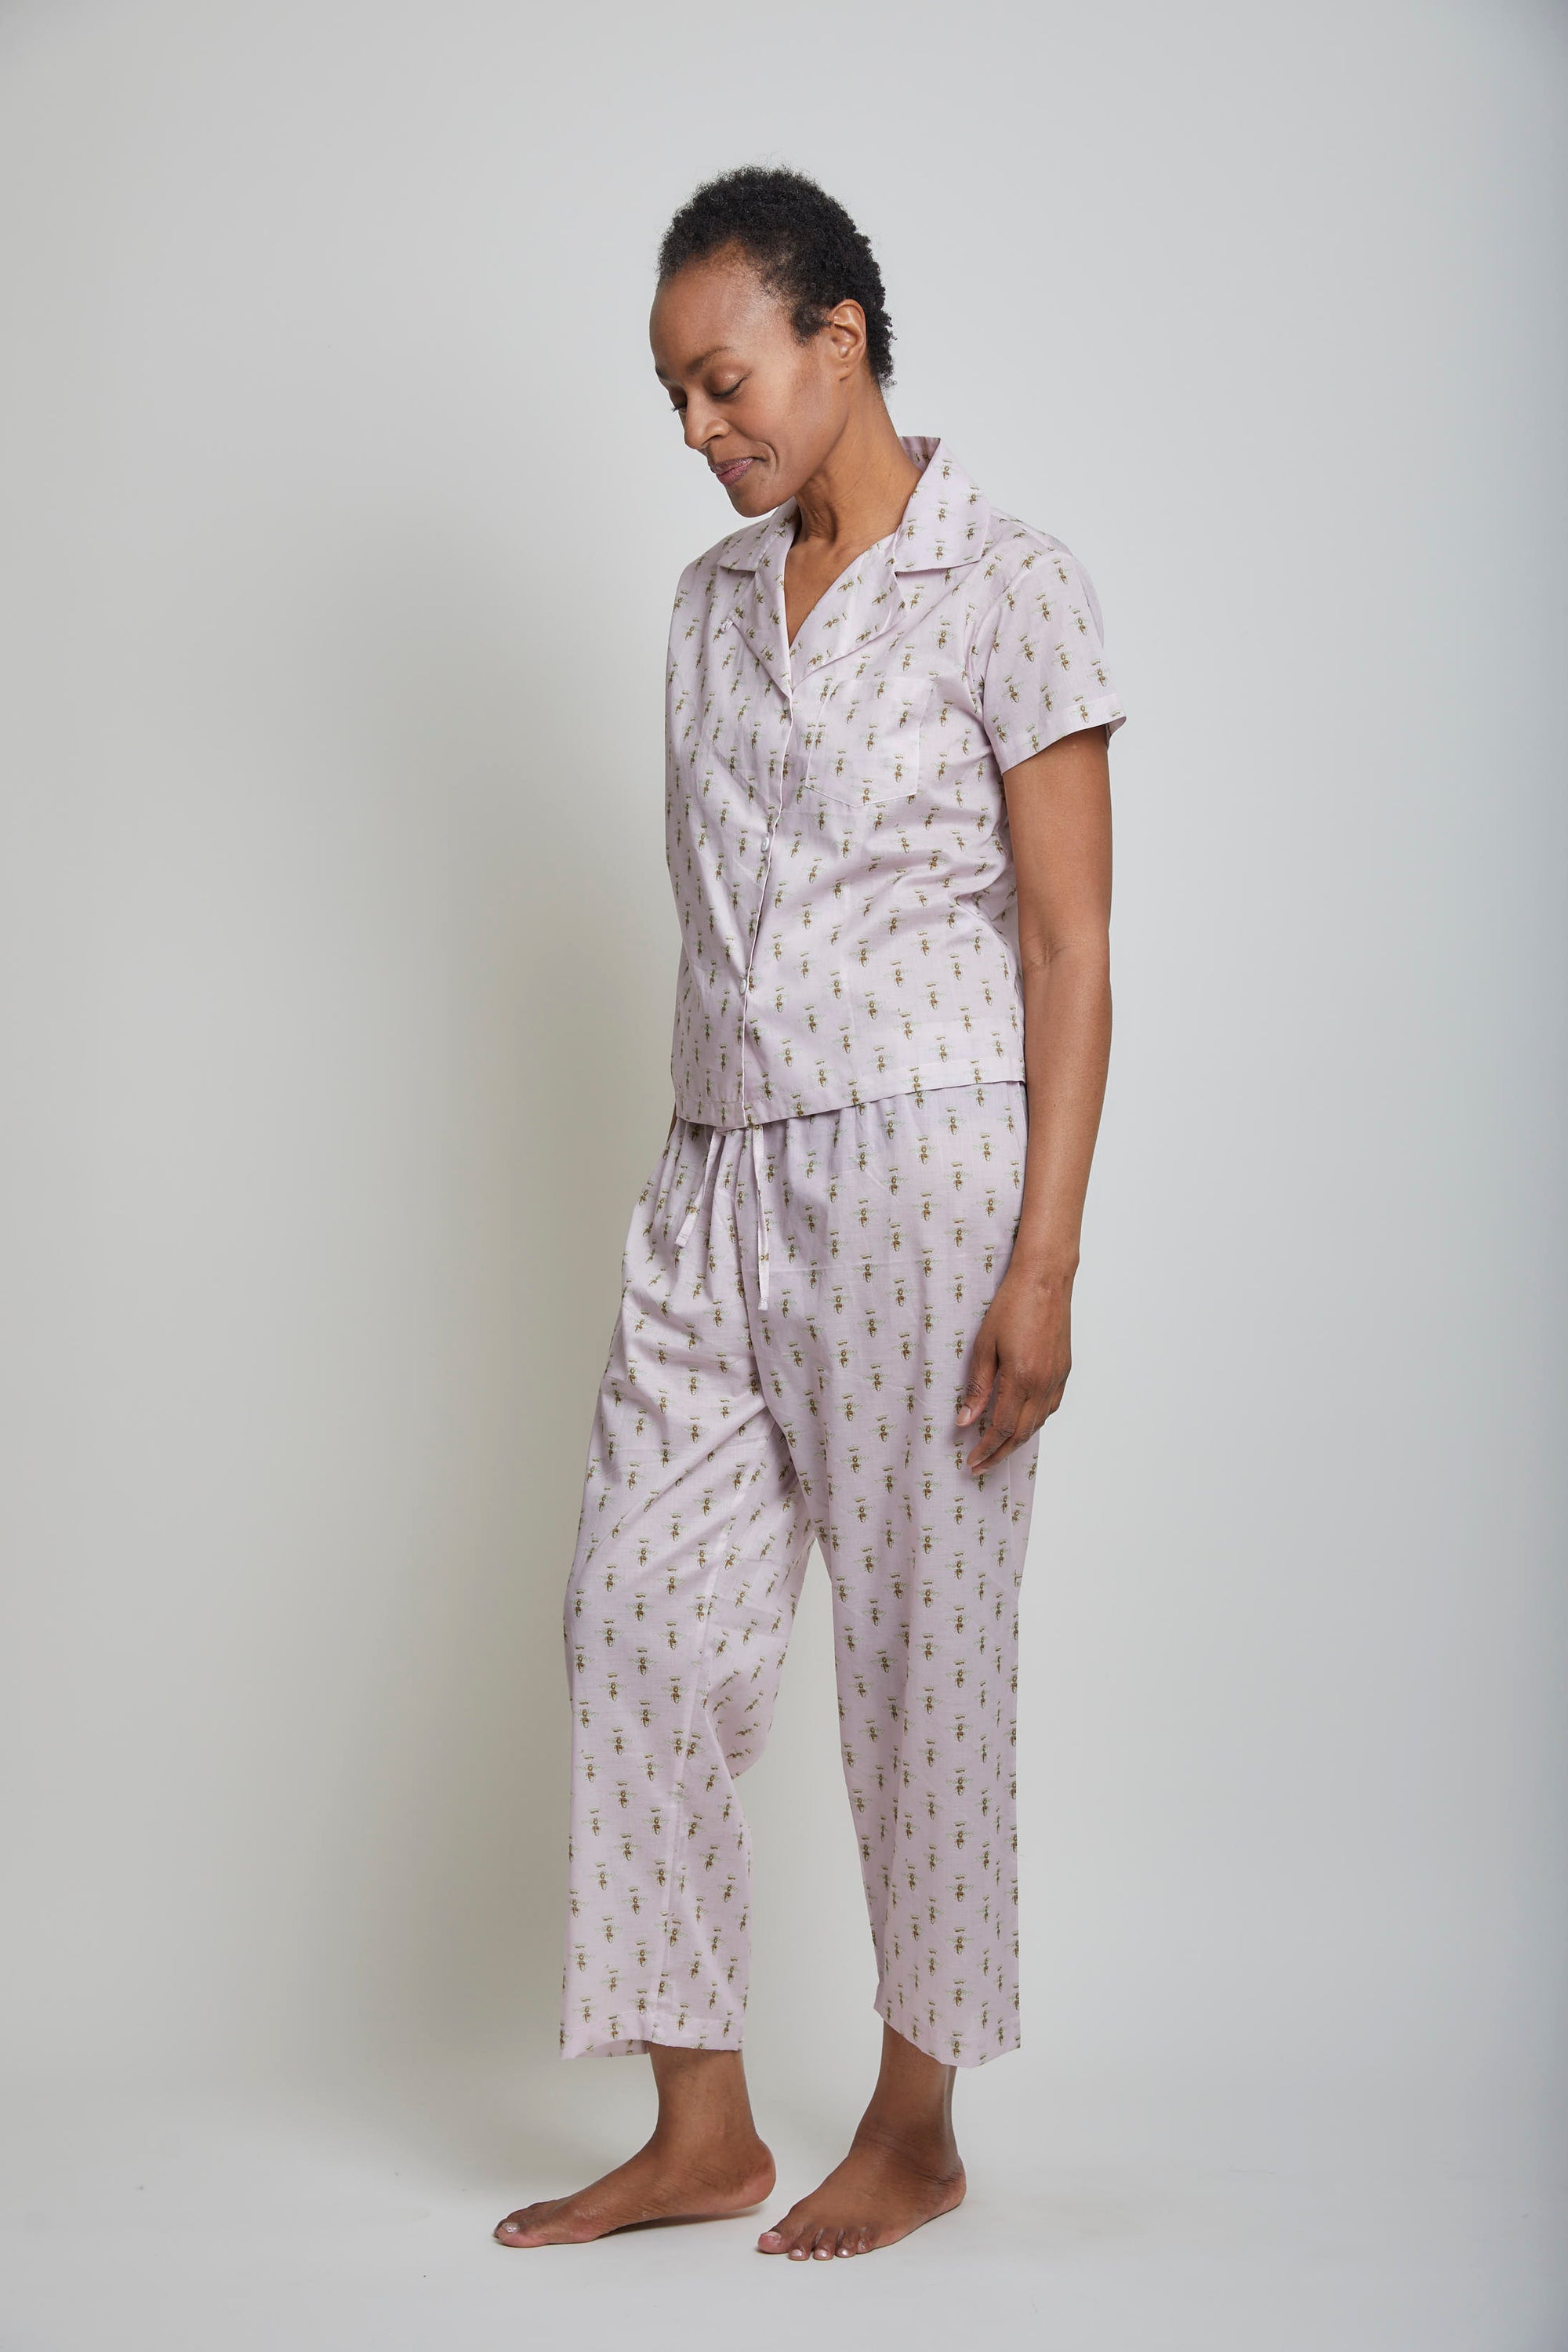 Apoline Short Sleeve Cropped Pant Pajama Set